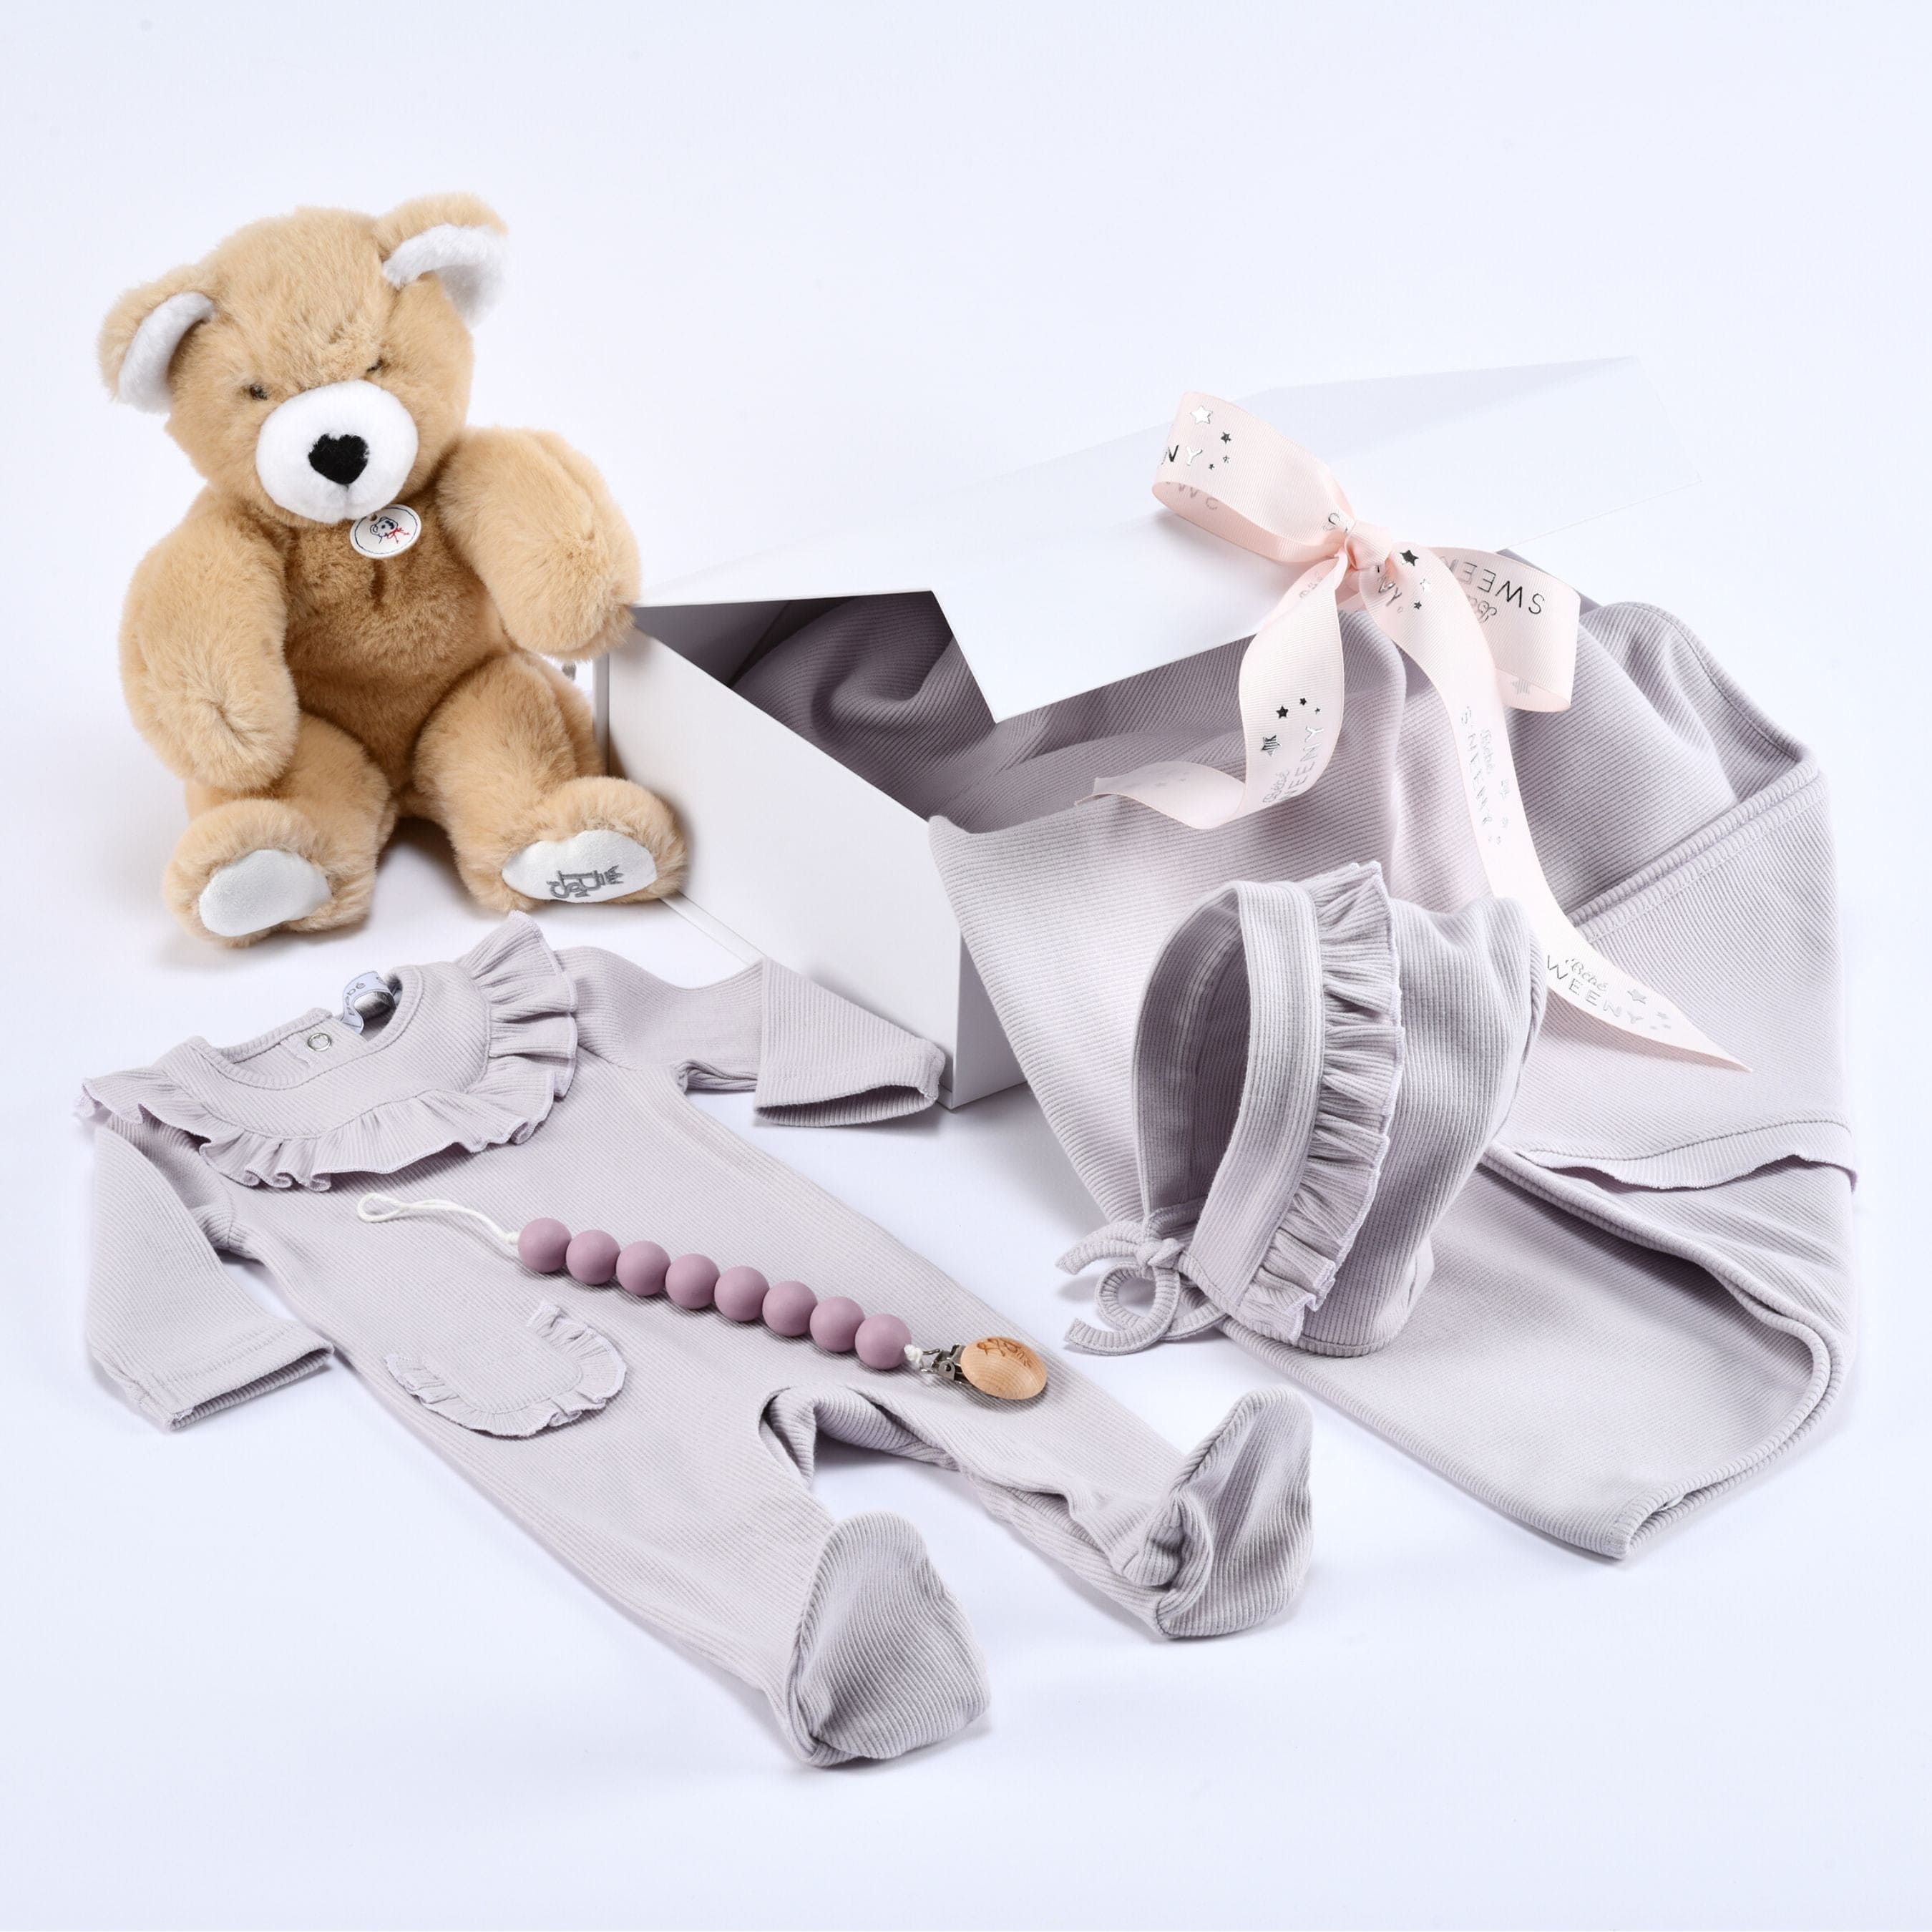 Emilia | Baby Girls Gift Box I Lilac Ribbed Cotton Set